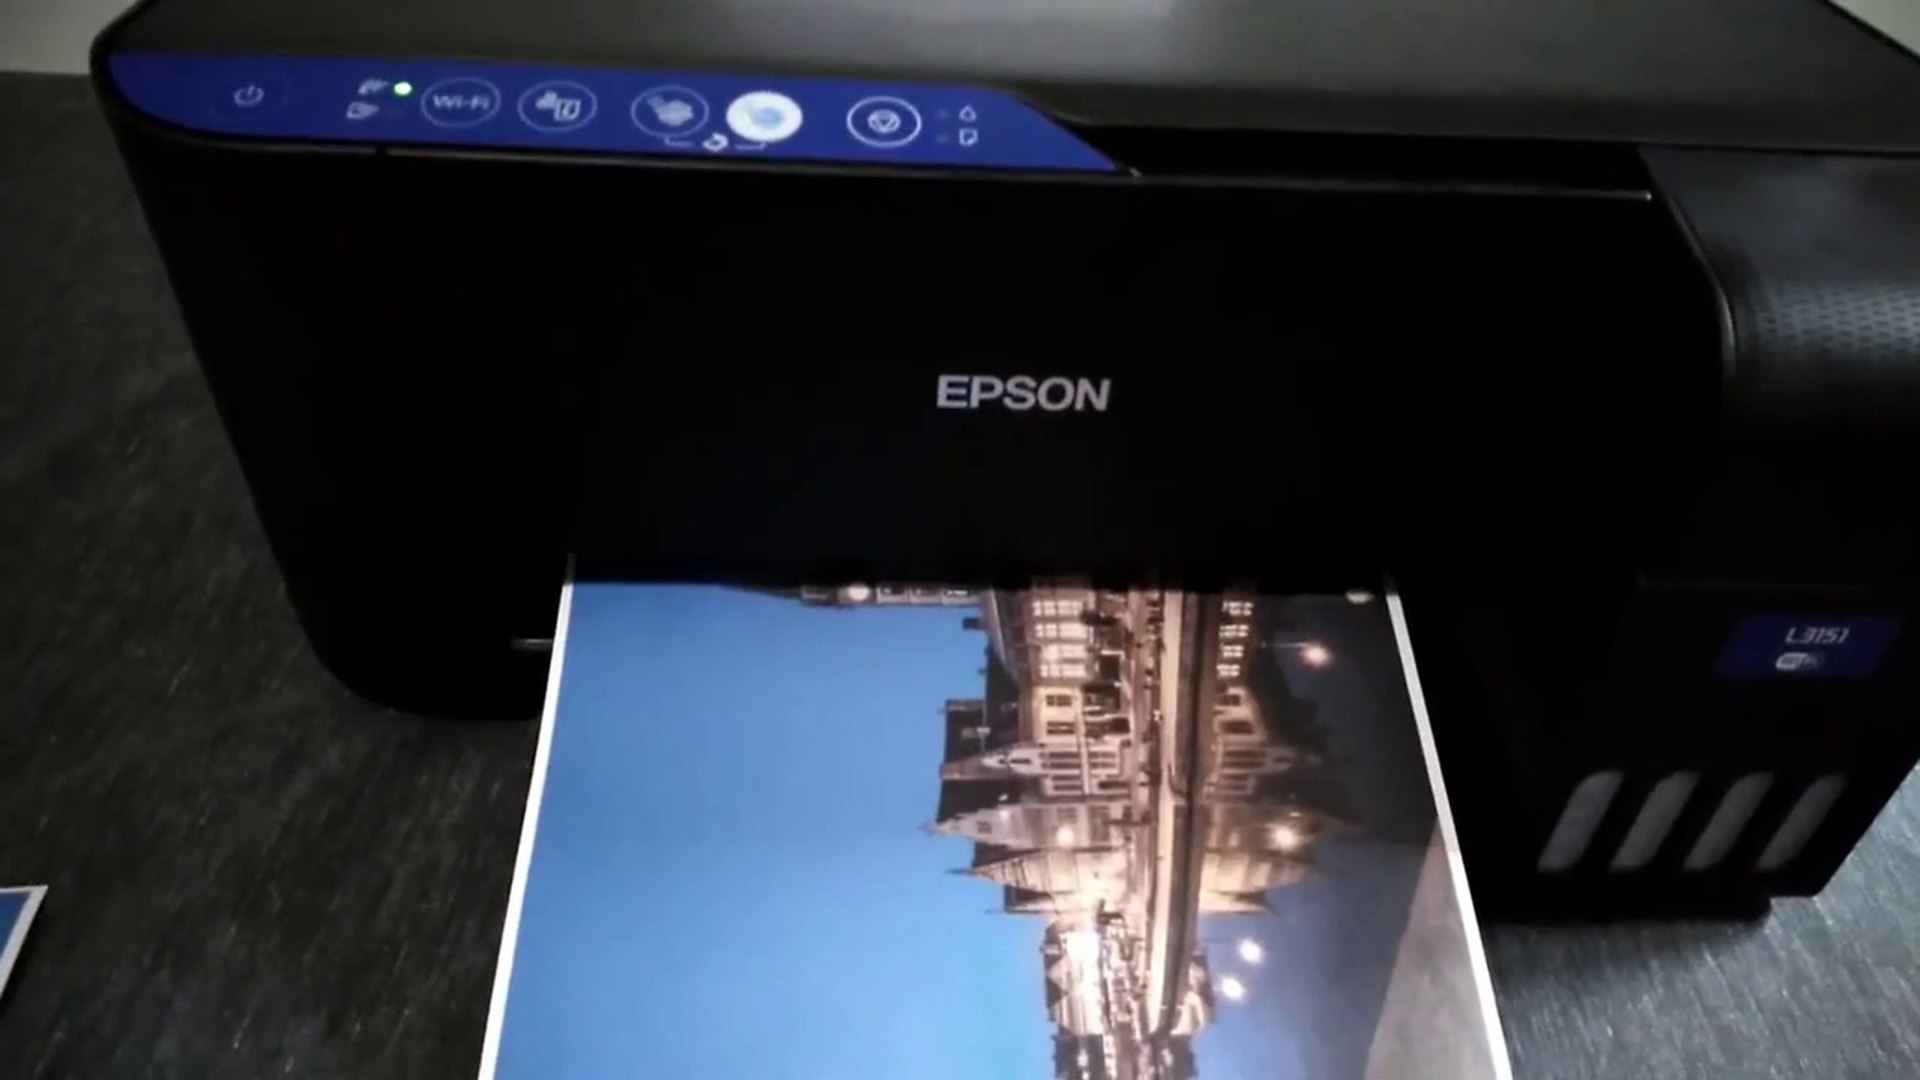 Epson Ecotank L3151 Tanklı Yazıcı (Tarayıcı + Fotokopi + WiFi ) - Kutu  Açılışı ve İnceleme Videosu - Dailymotion Video